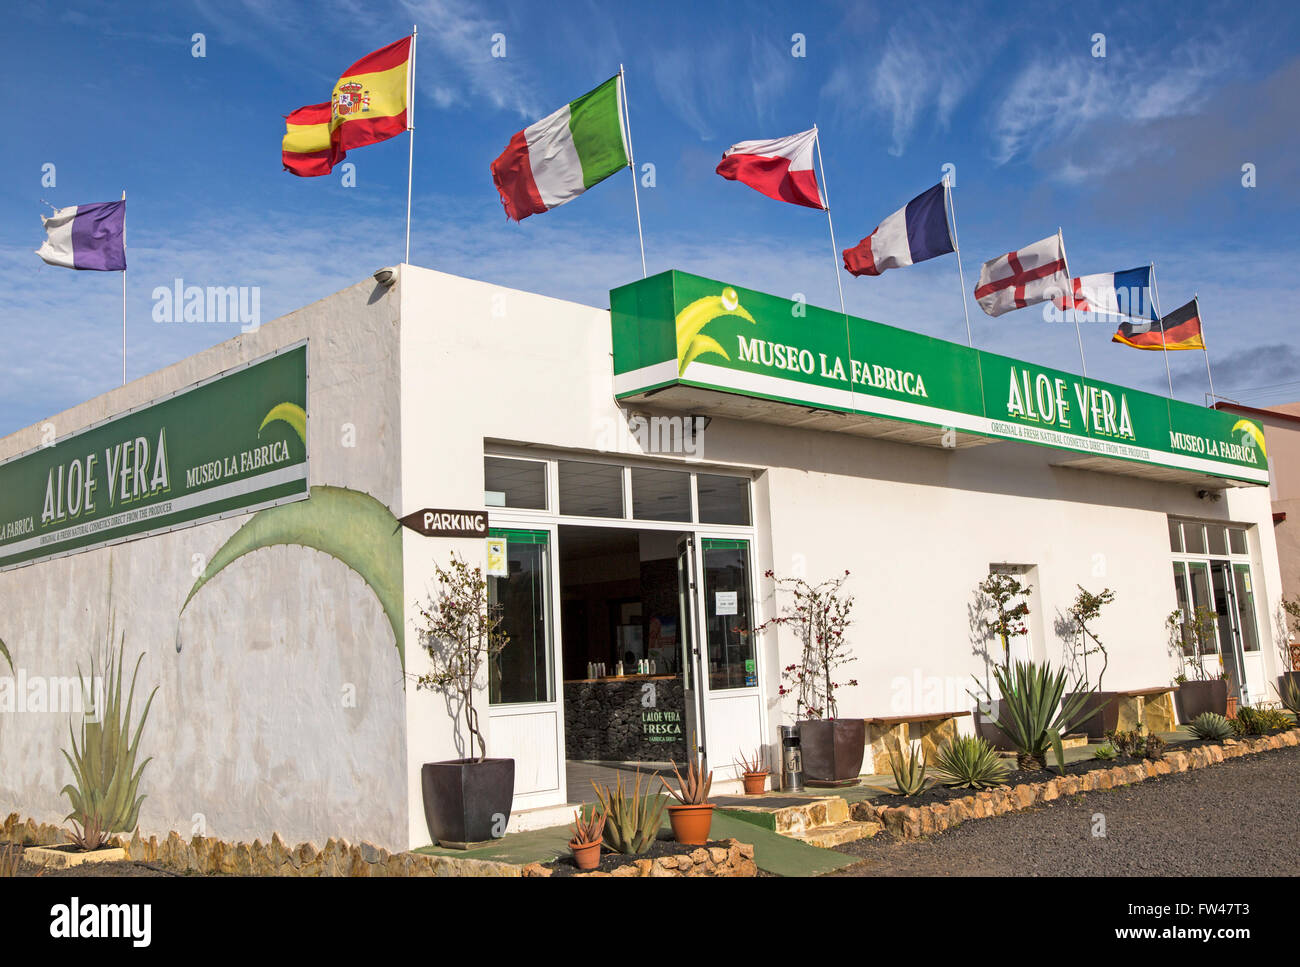 Aloe vera Tienda de fábrica, La Oliva, Fuerteventura, Islas Canarias,  España Fotografía de stock - Alamy